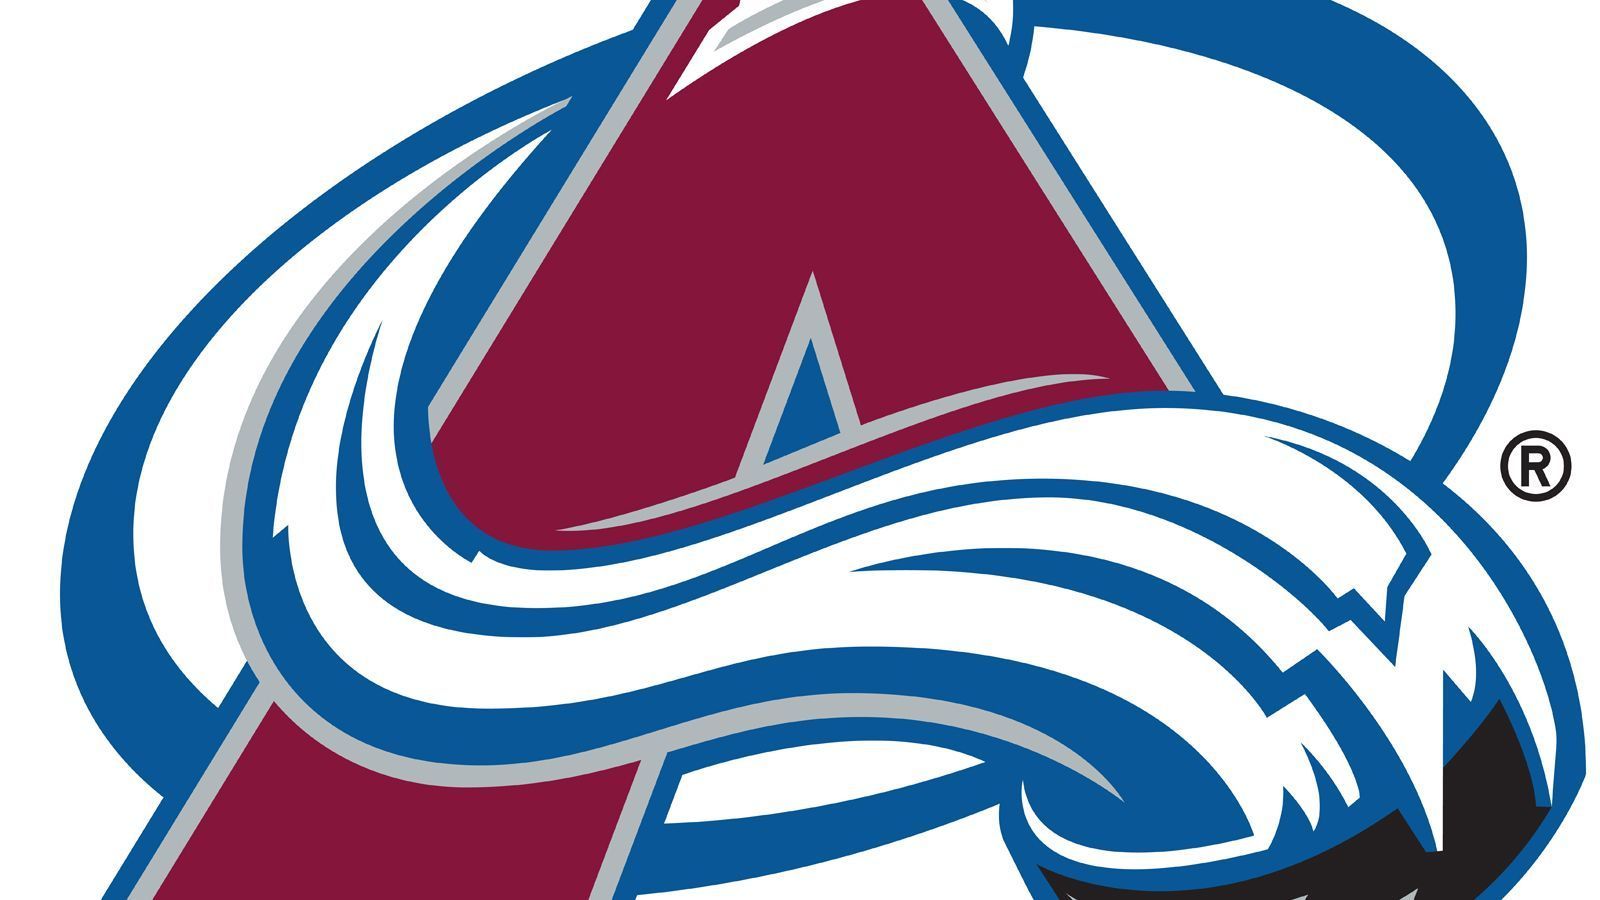 
                <strong>Colorado Avalanche</strong><br>
                Der Name Avalanche hat seine Begründung darin, dass es sehr oft Lawinen (engl. Avalanche) in den Rocky Mountains gibt. Das Vorgängerteam waren die Quebec Nordiques. Seit 1995 ist diese Franchise in Denver beheimatet.
              